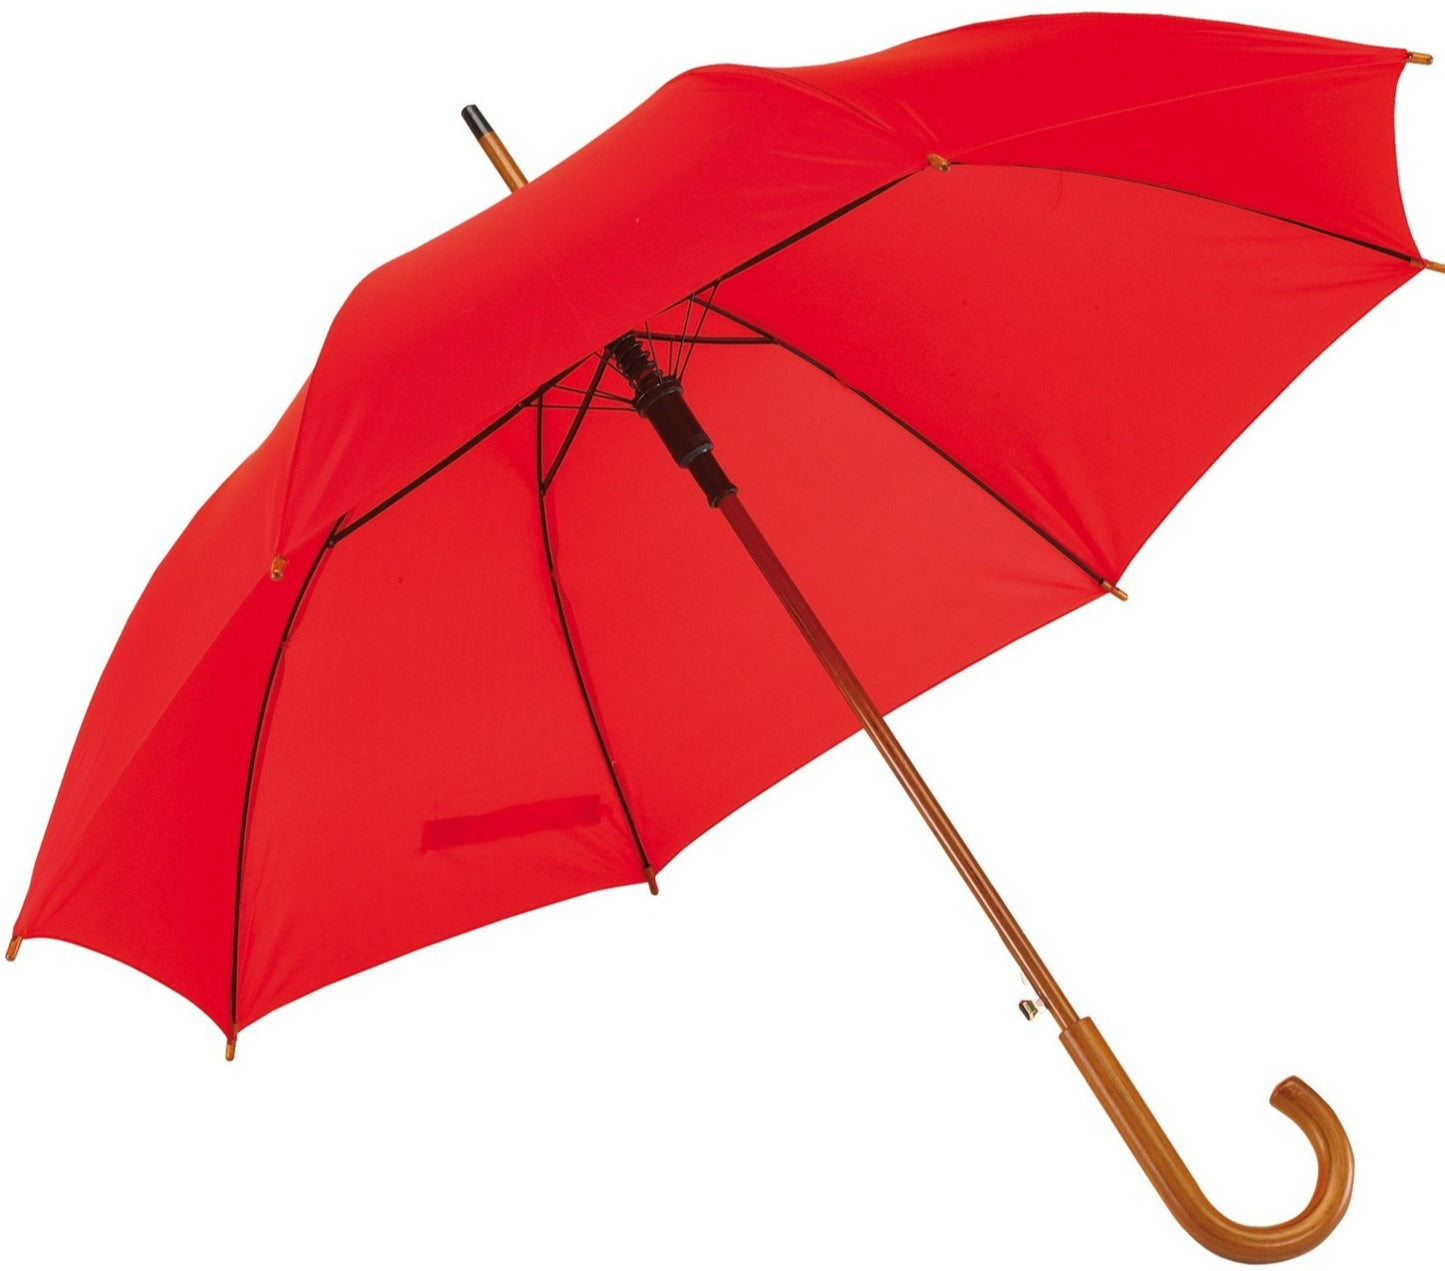 Κόκκινη ομπρέλα βροχής, αυτόματη, με ξύλινη κυρτή λαβή.